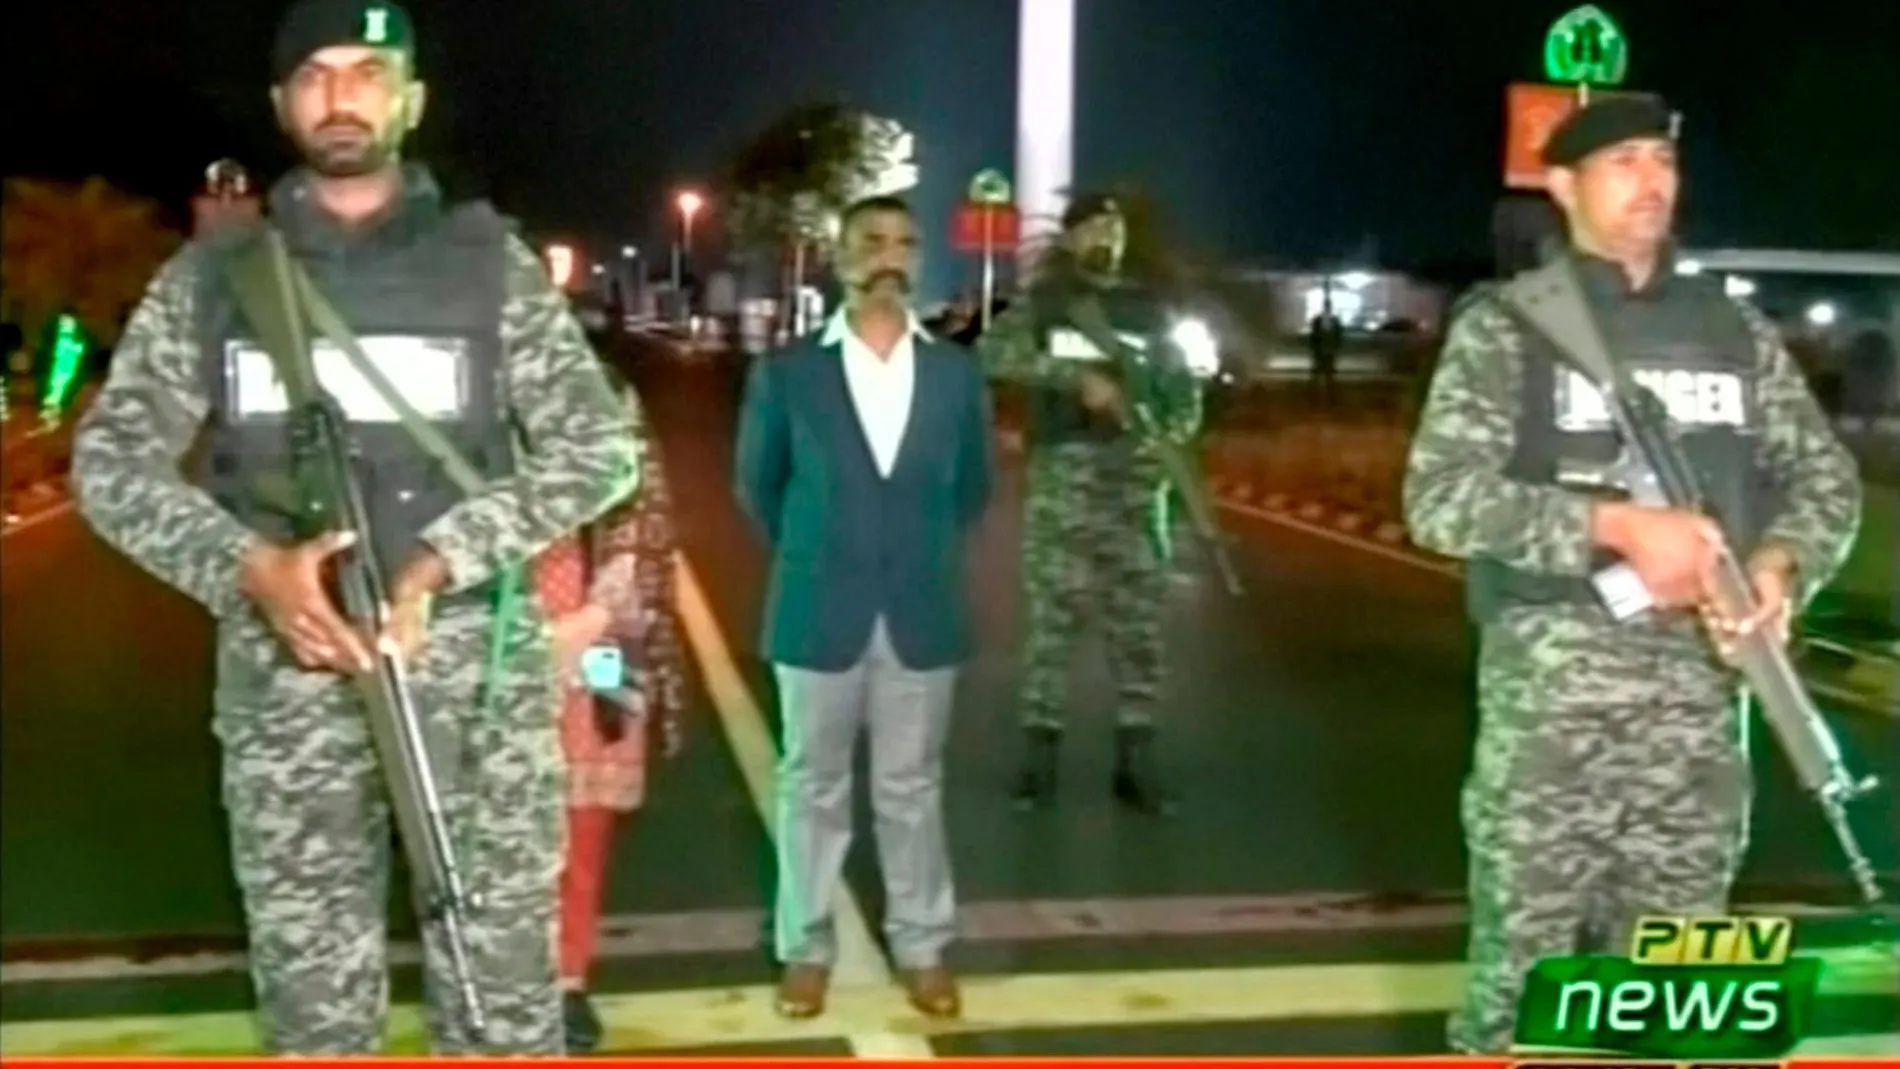 El comandante indio Abhinandan Varthaman llegó vestido civil a la frontera